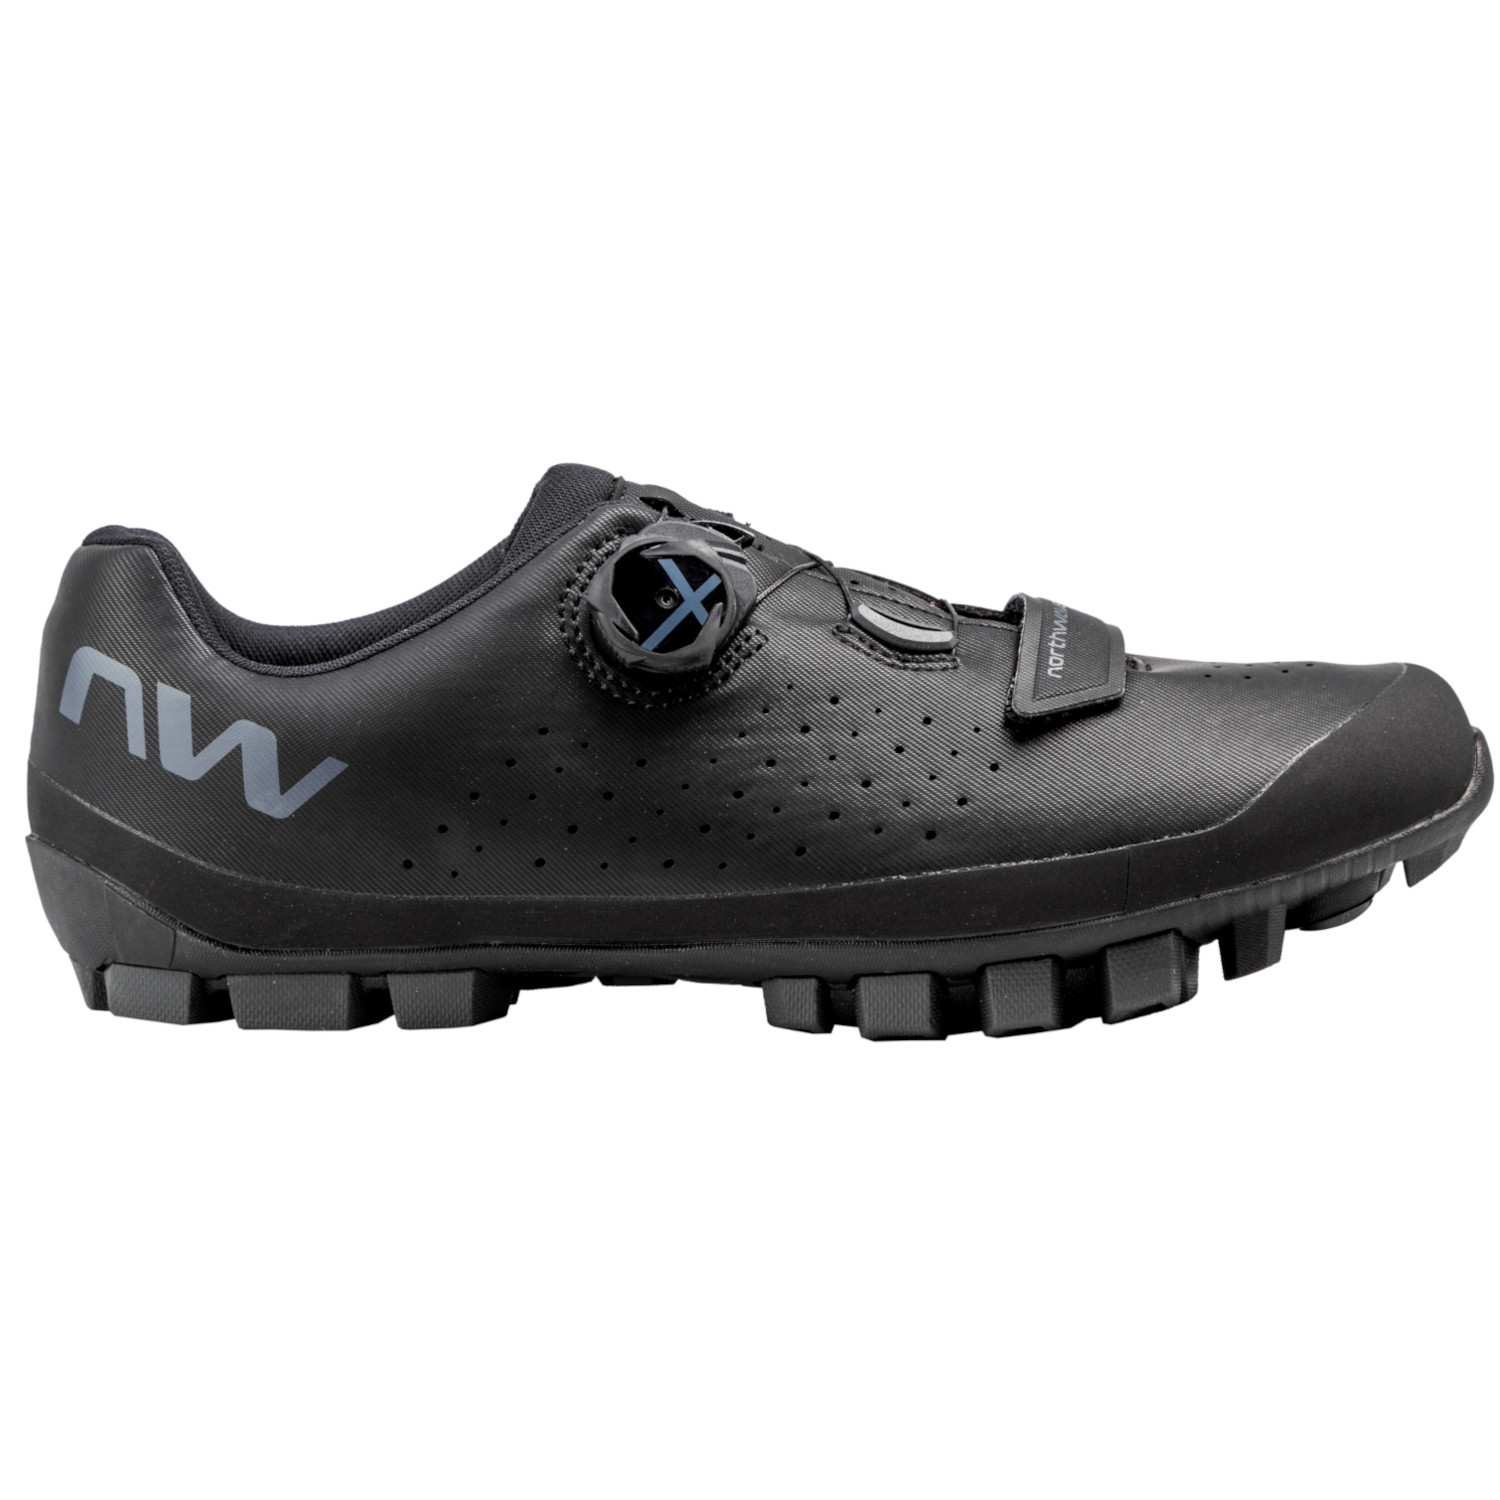 Produktbild von Northwave Hammer Plus Wide MTB Schuhe - black/dark grey 19